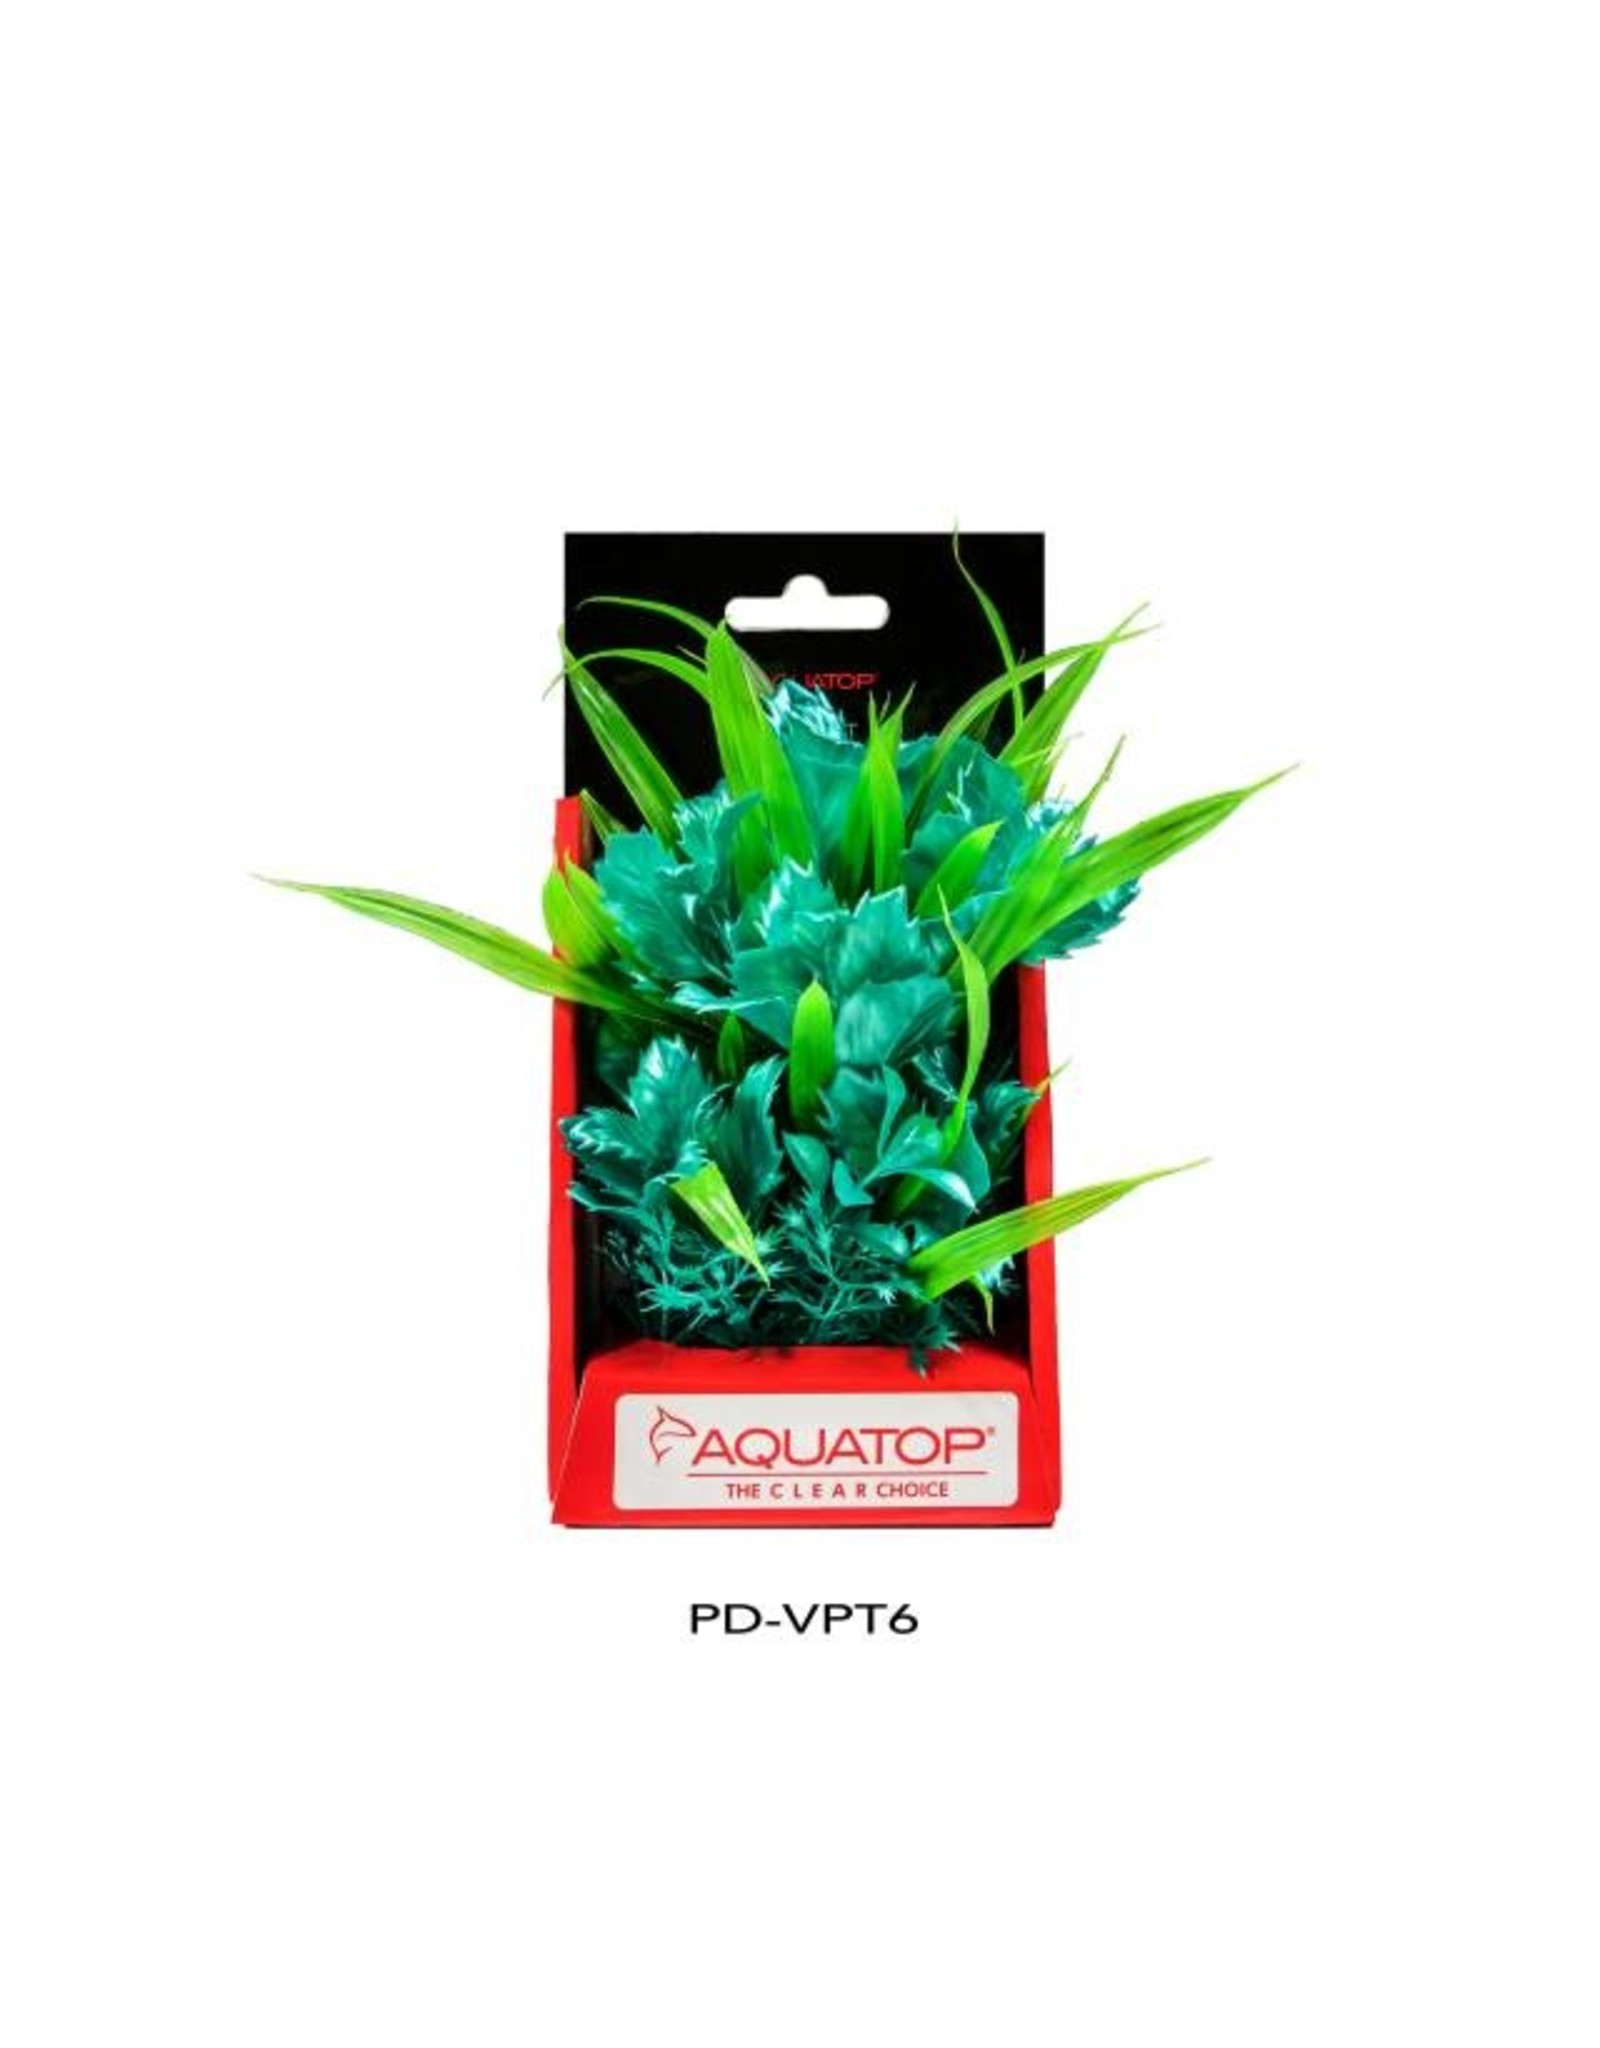 AquaTop AQUATOP Vibrant Passion Plant Series